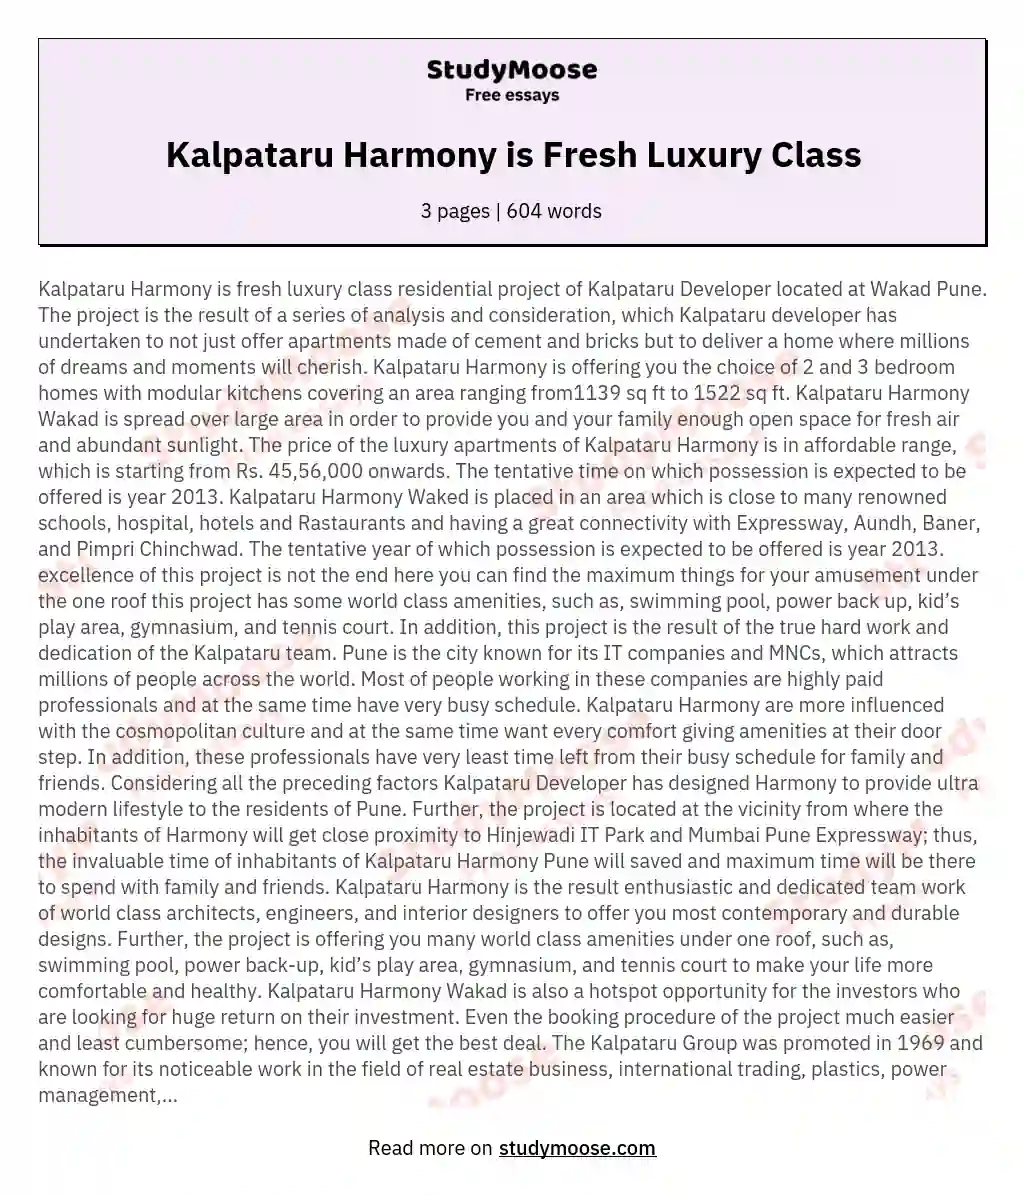 Kalpataru Harmony is Fresh Luxury Class essay